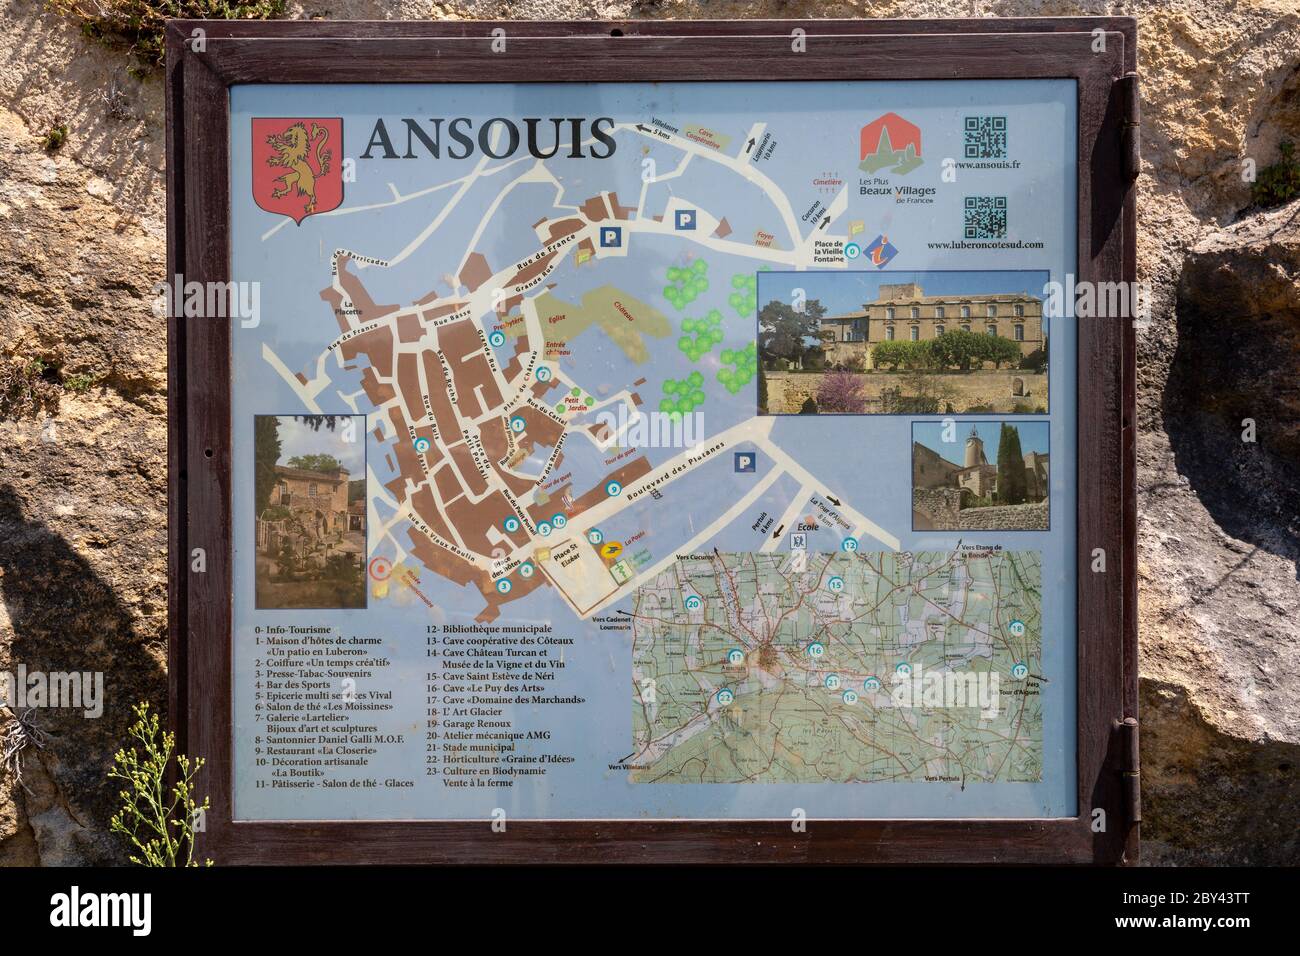 Ansouis Francia 14 luglio 2015 : segno con una mappa della città di Ansouis in Provenza, indicando le posizioni di una varietà di luoghi di interesse locale Foto Stock